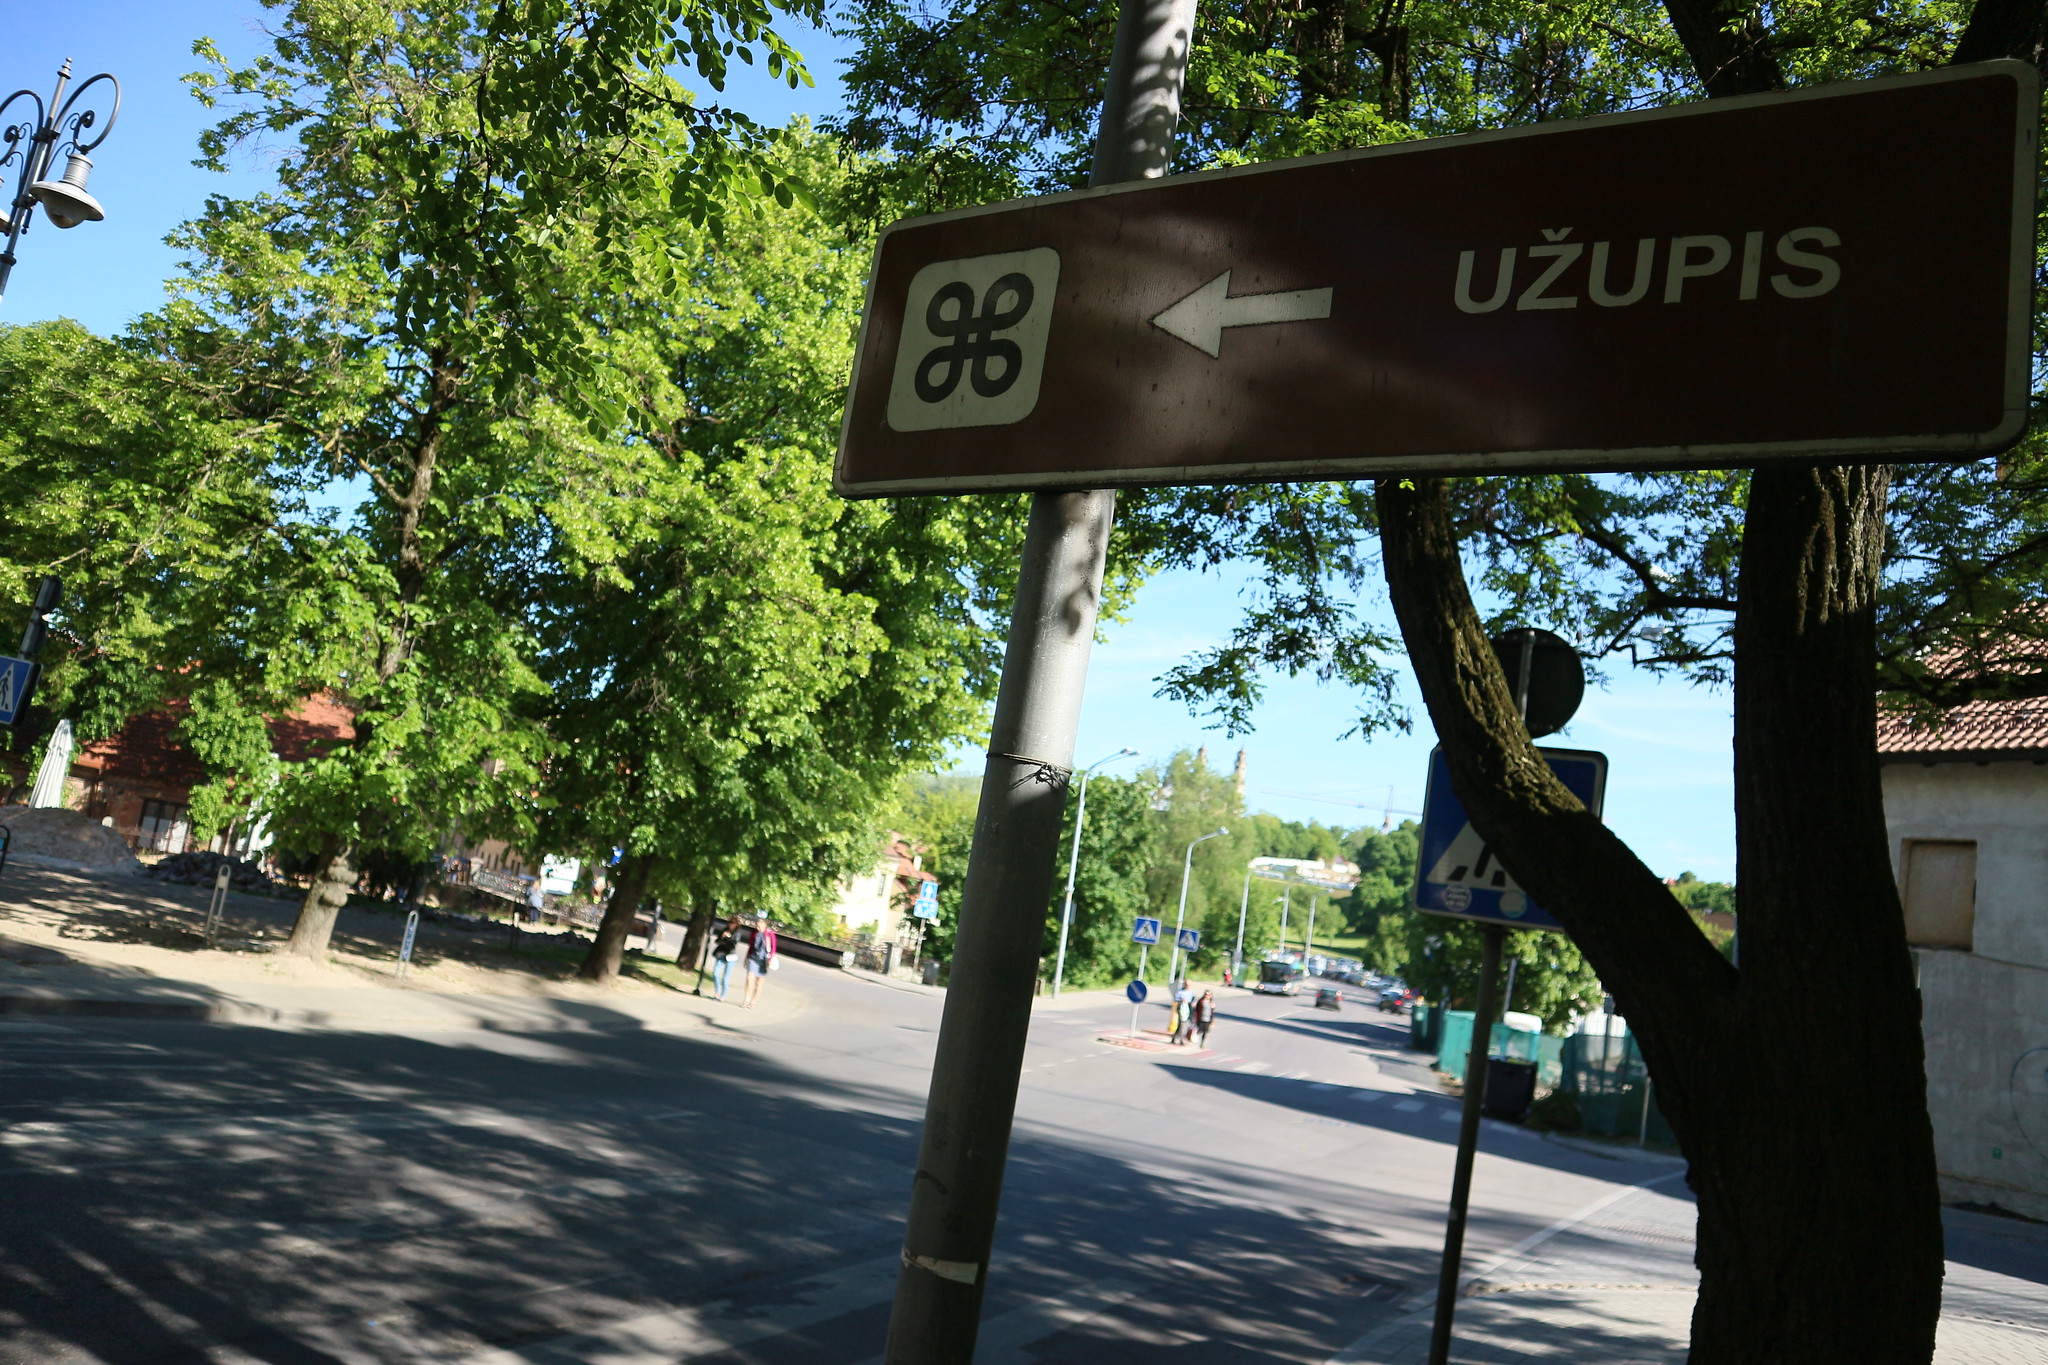 República de Uzupis en Vilnius (Lituania). Barrio alternativo, independiente y bohemio de artistas.